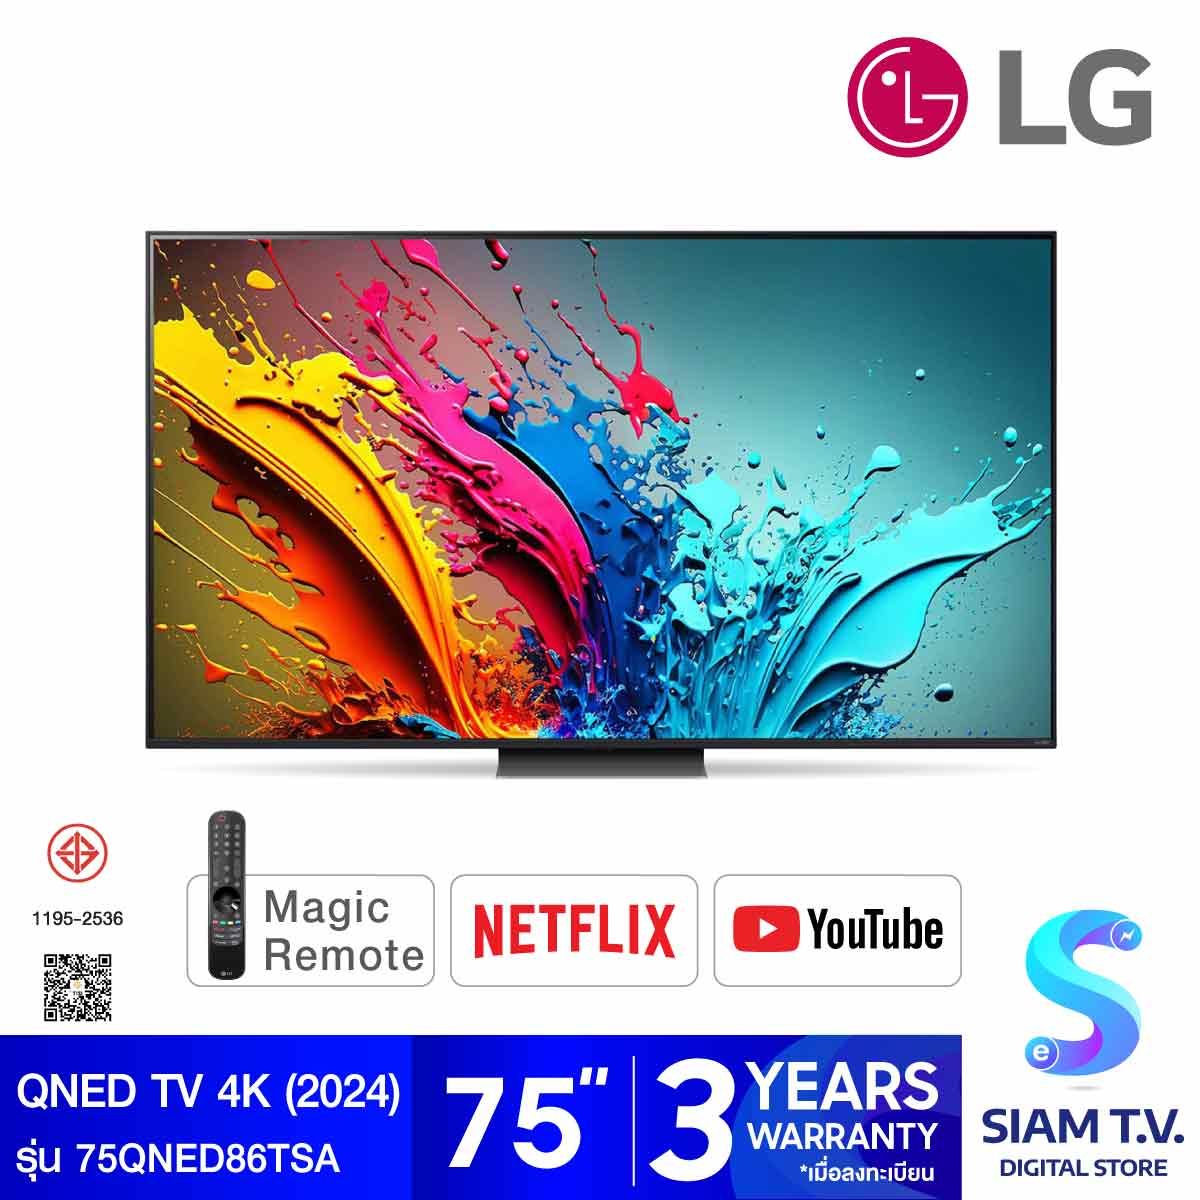 LG QNED Smart TV 4K 120Hz รุ่น 75QNED86TSA สมาร์ททีวีขนาด 75 นิ้ว